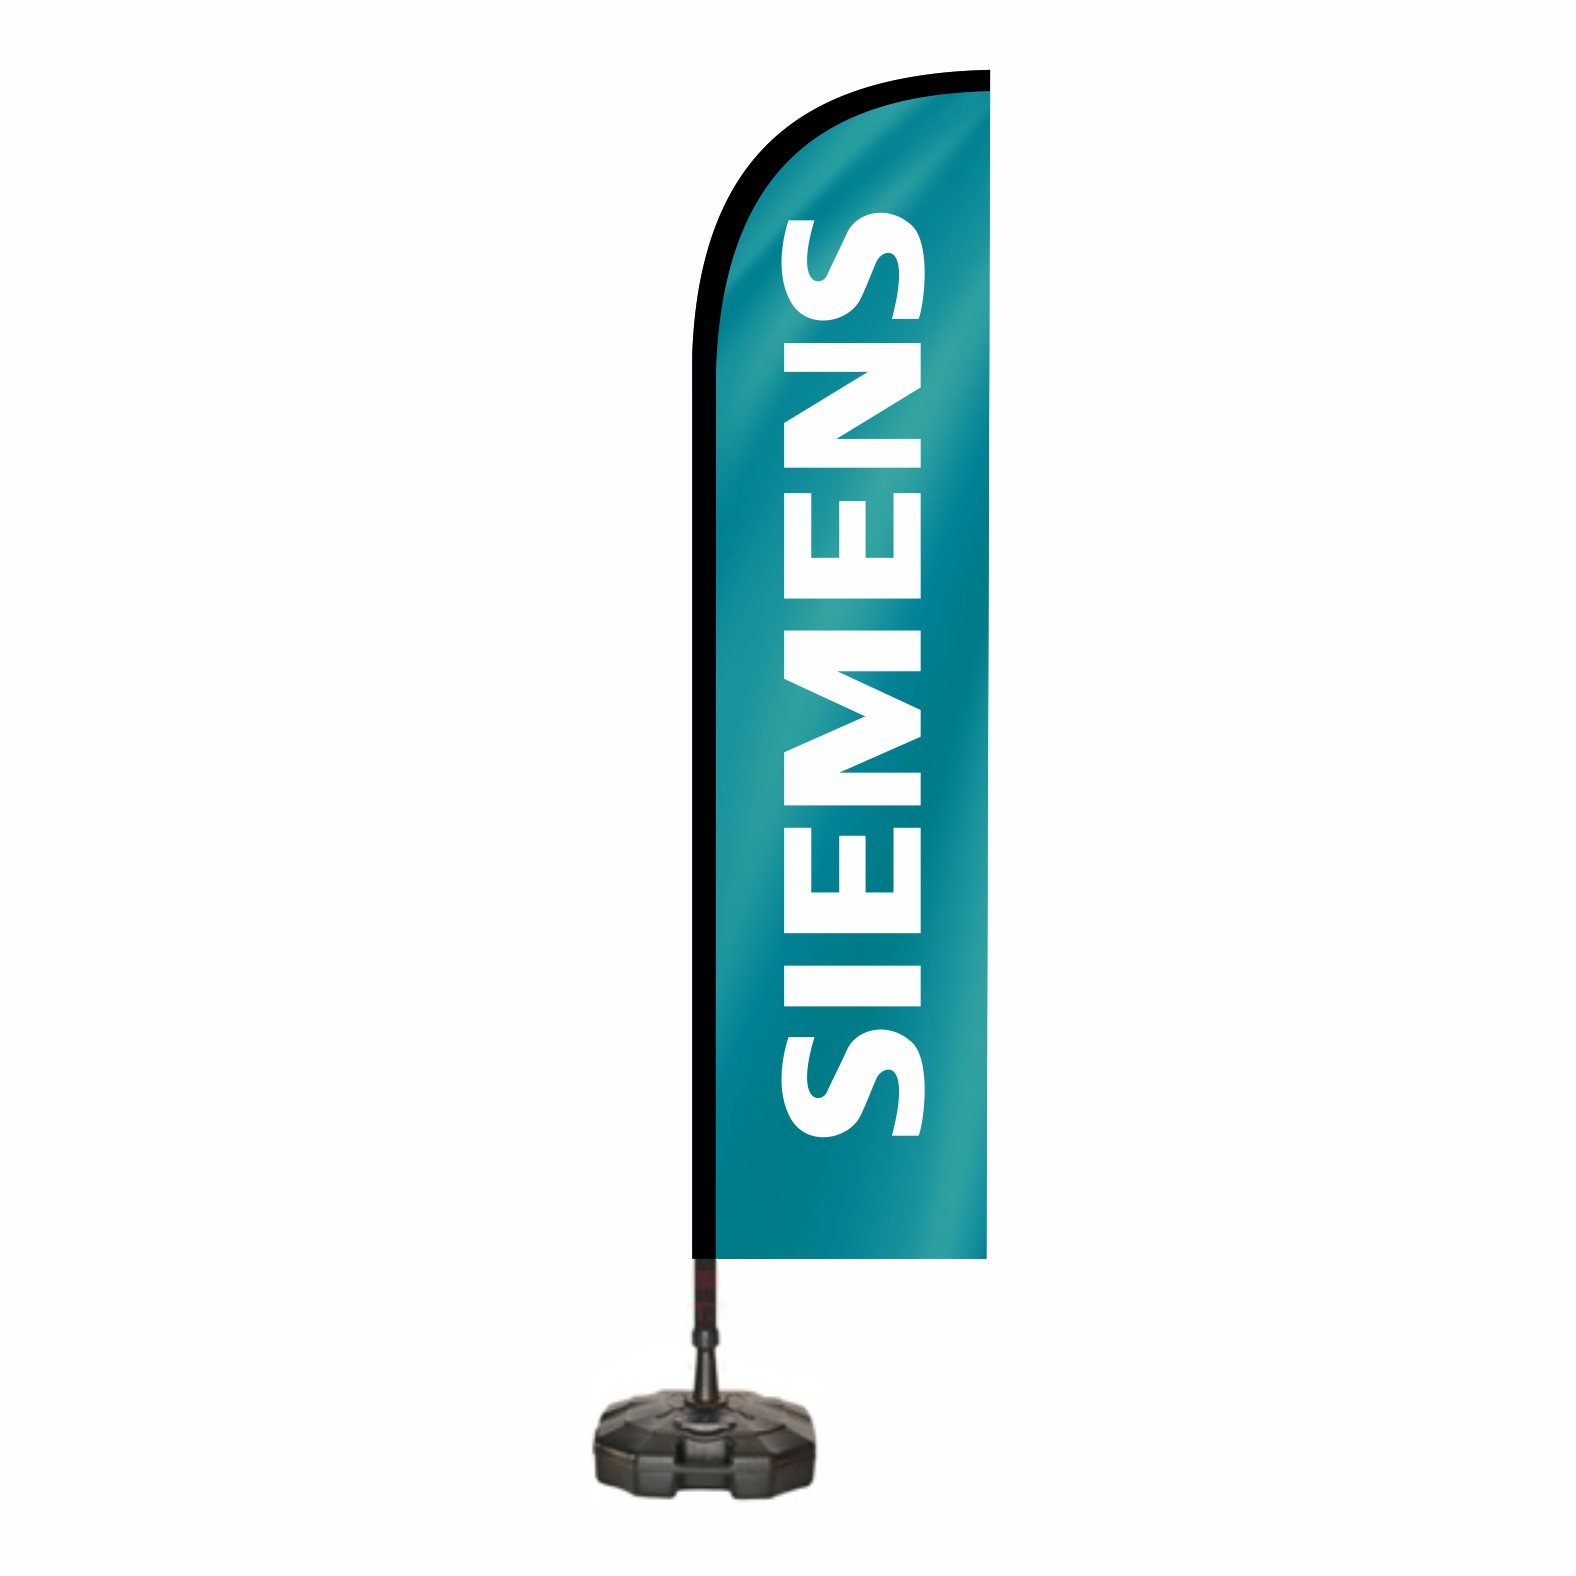 Siemens Yelken Bayraklar Resmi